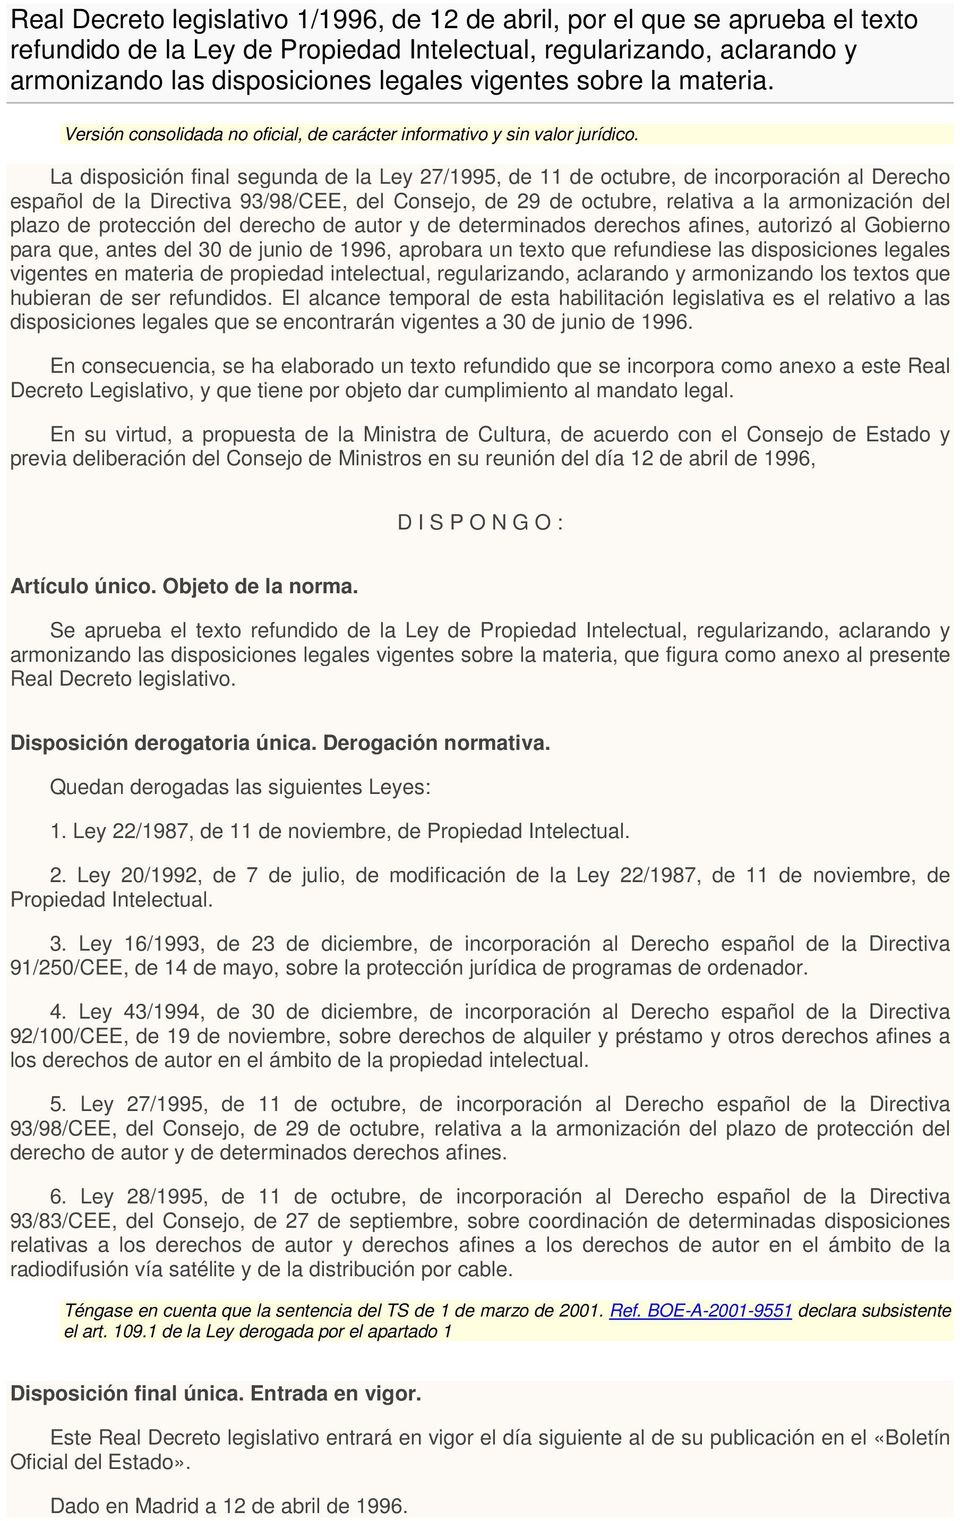 La disposición final segunda de la Ley 27/1995, de 11 de octubre, de incorporación al Derecho español de la Directiva 93/98/CEE, del Consejo, de 29 de octubre, relativa a la armonización del plazo de